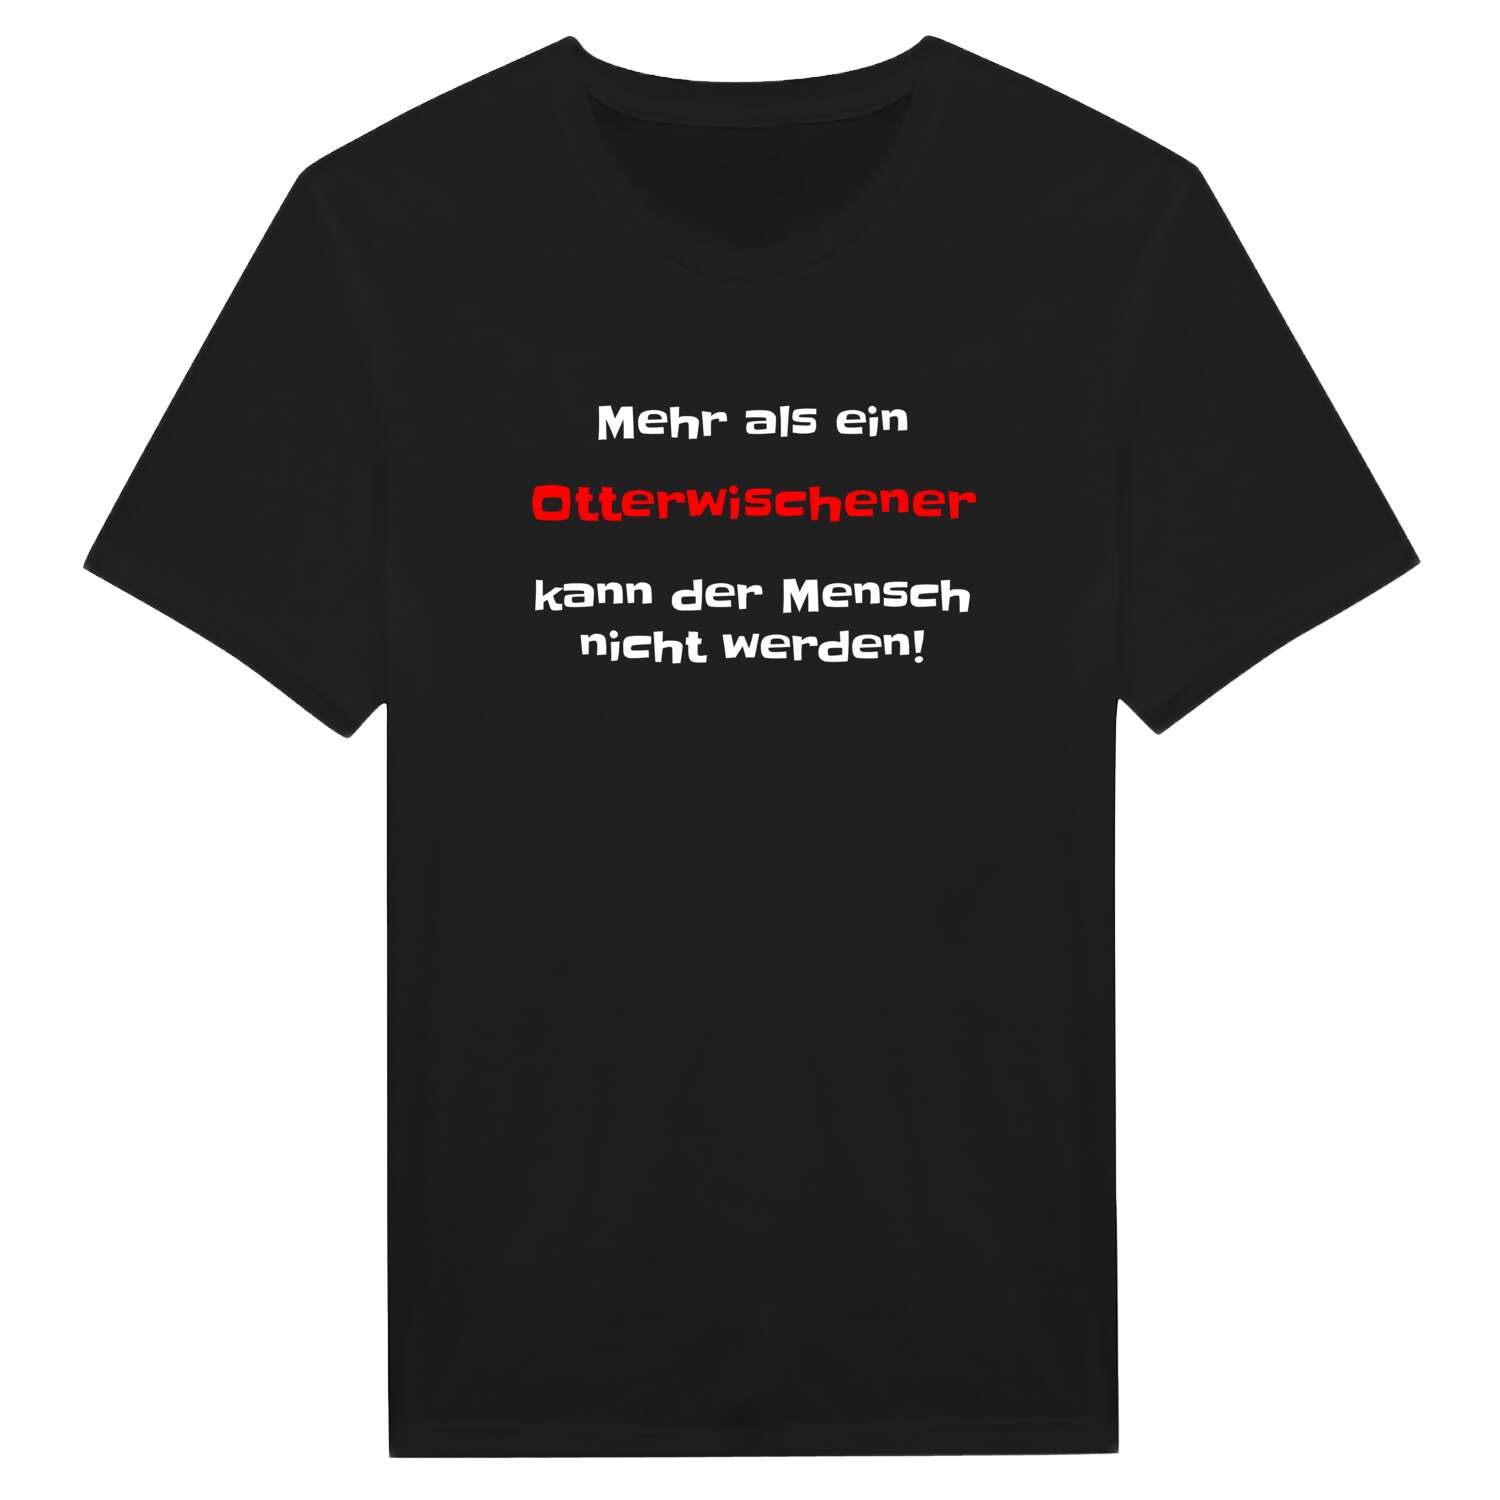 Otterwisch T-Shirt »Mehr als ein«